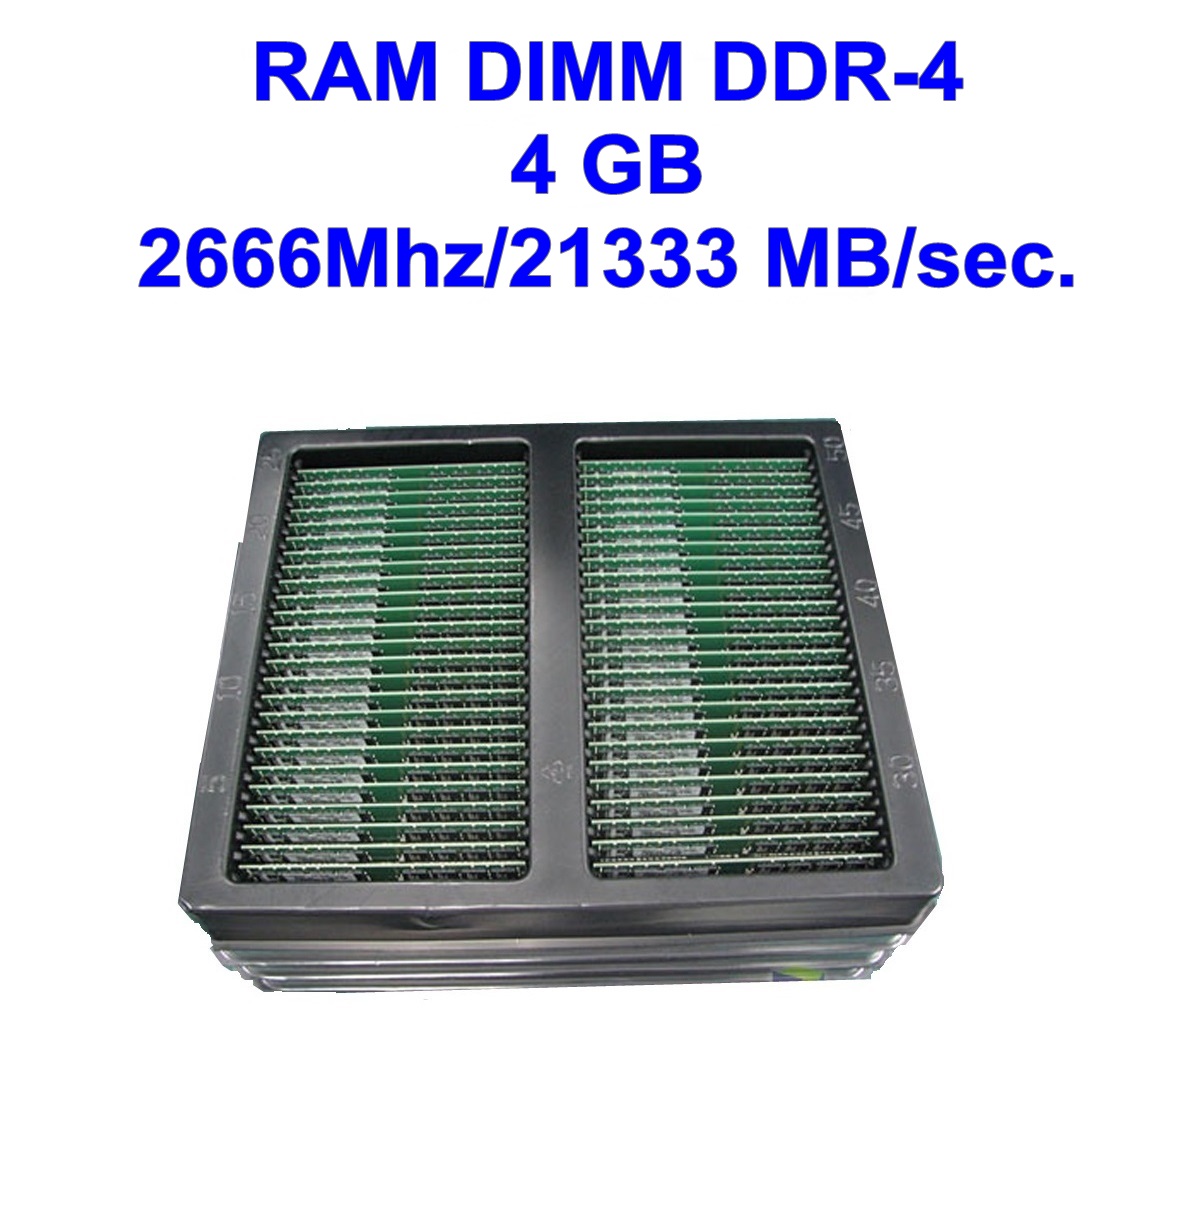 DIMM DDR-4 4 GB 2666Mhz/21333 MB/sec.